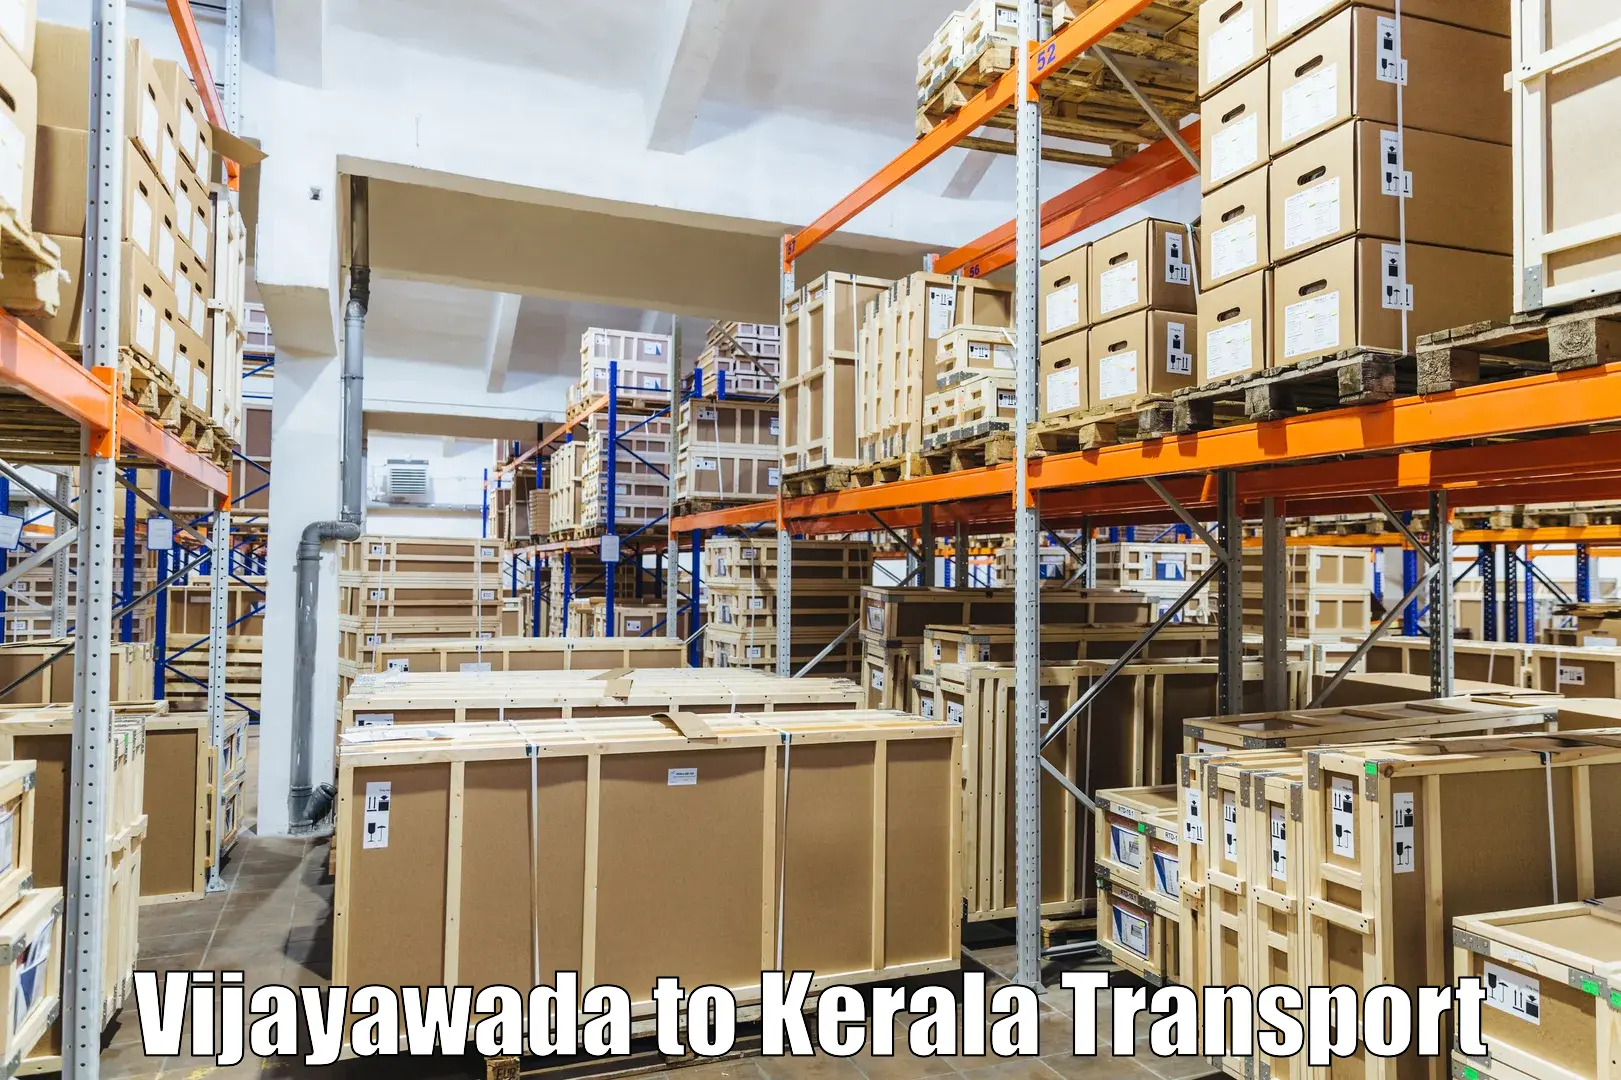 Transport shared services Vijayawada to Kanjiramattom